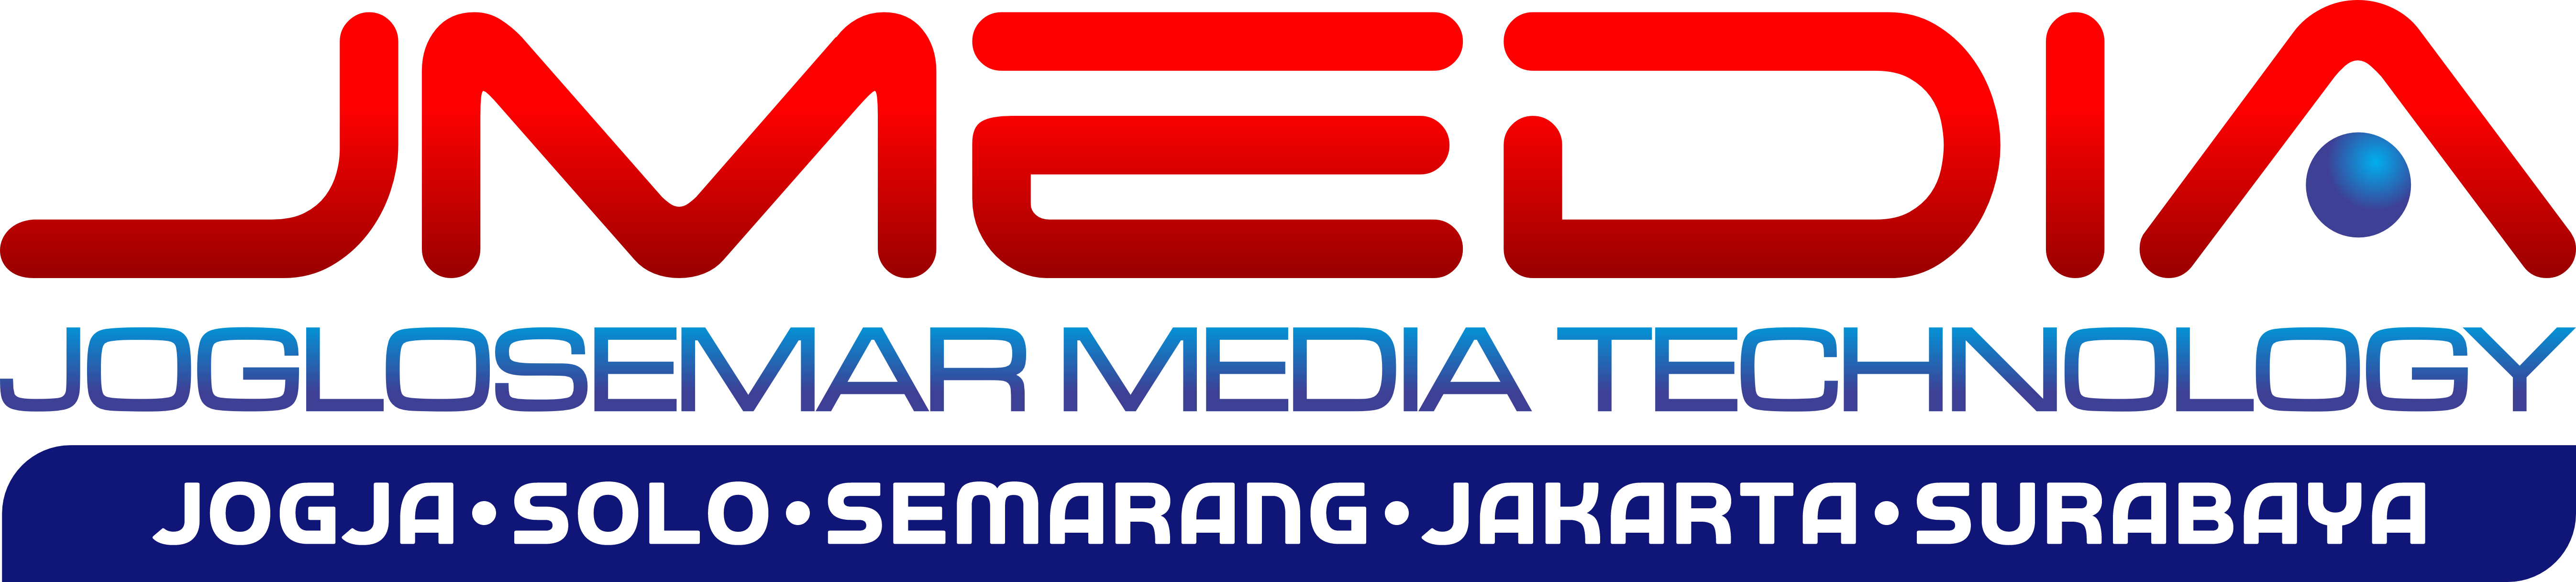 JMedia Technology